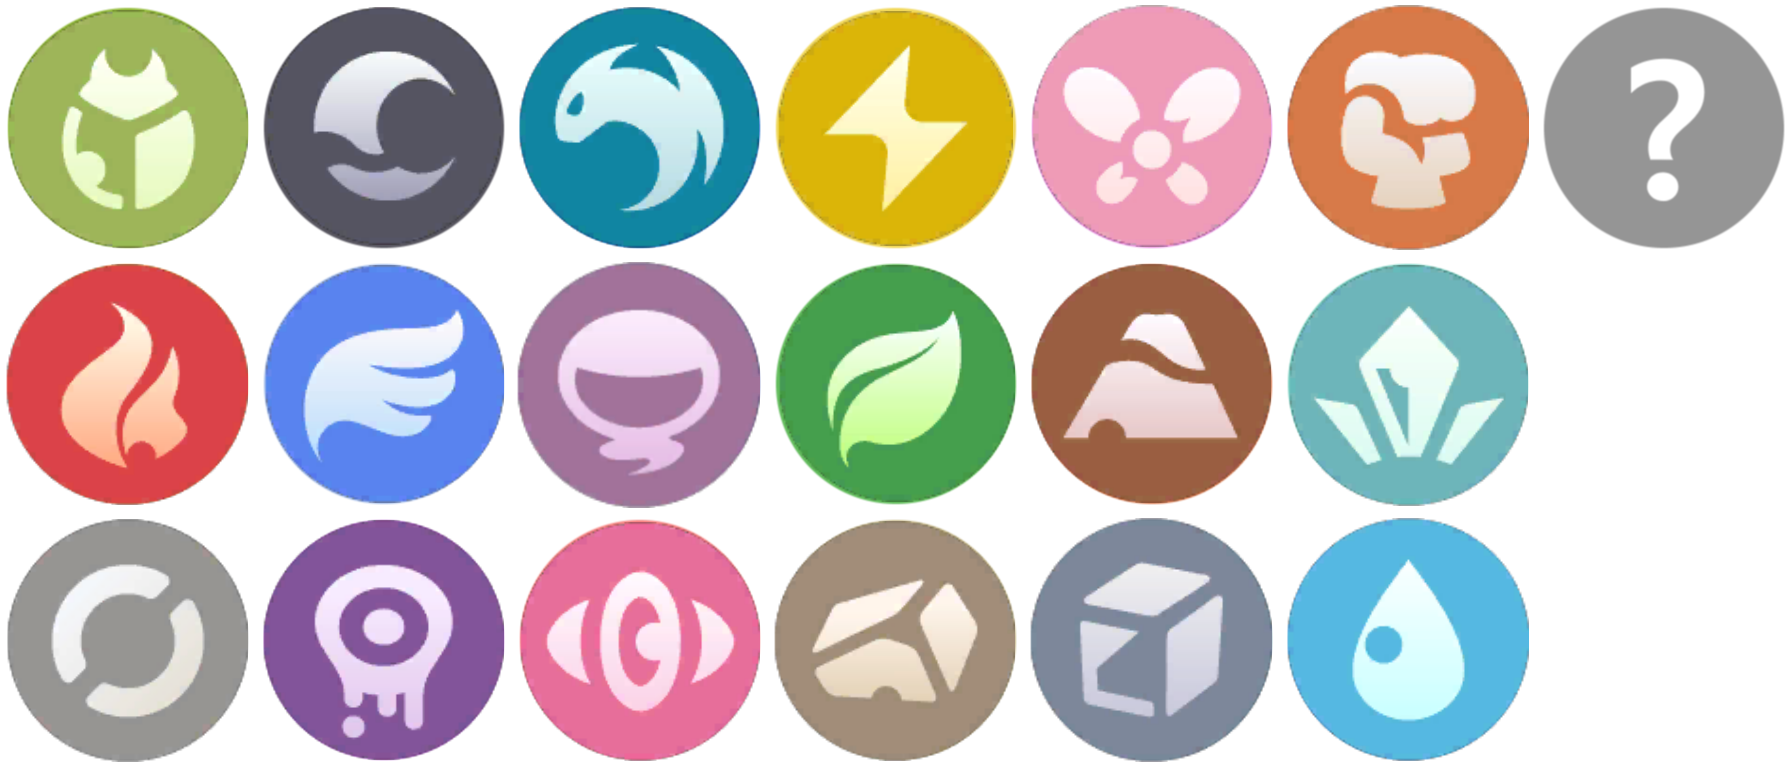 Pokemon Types Icons